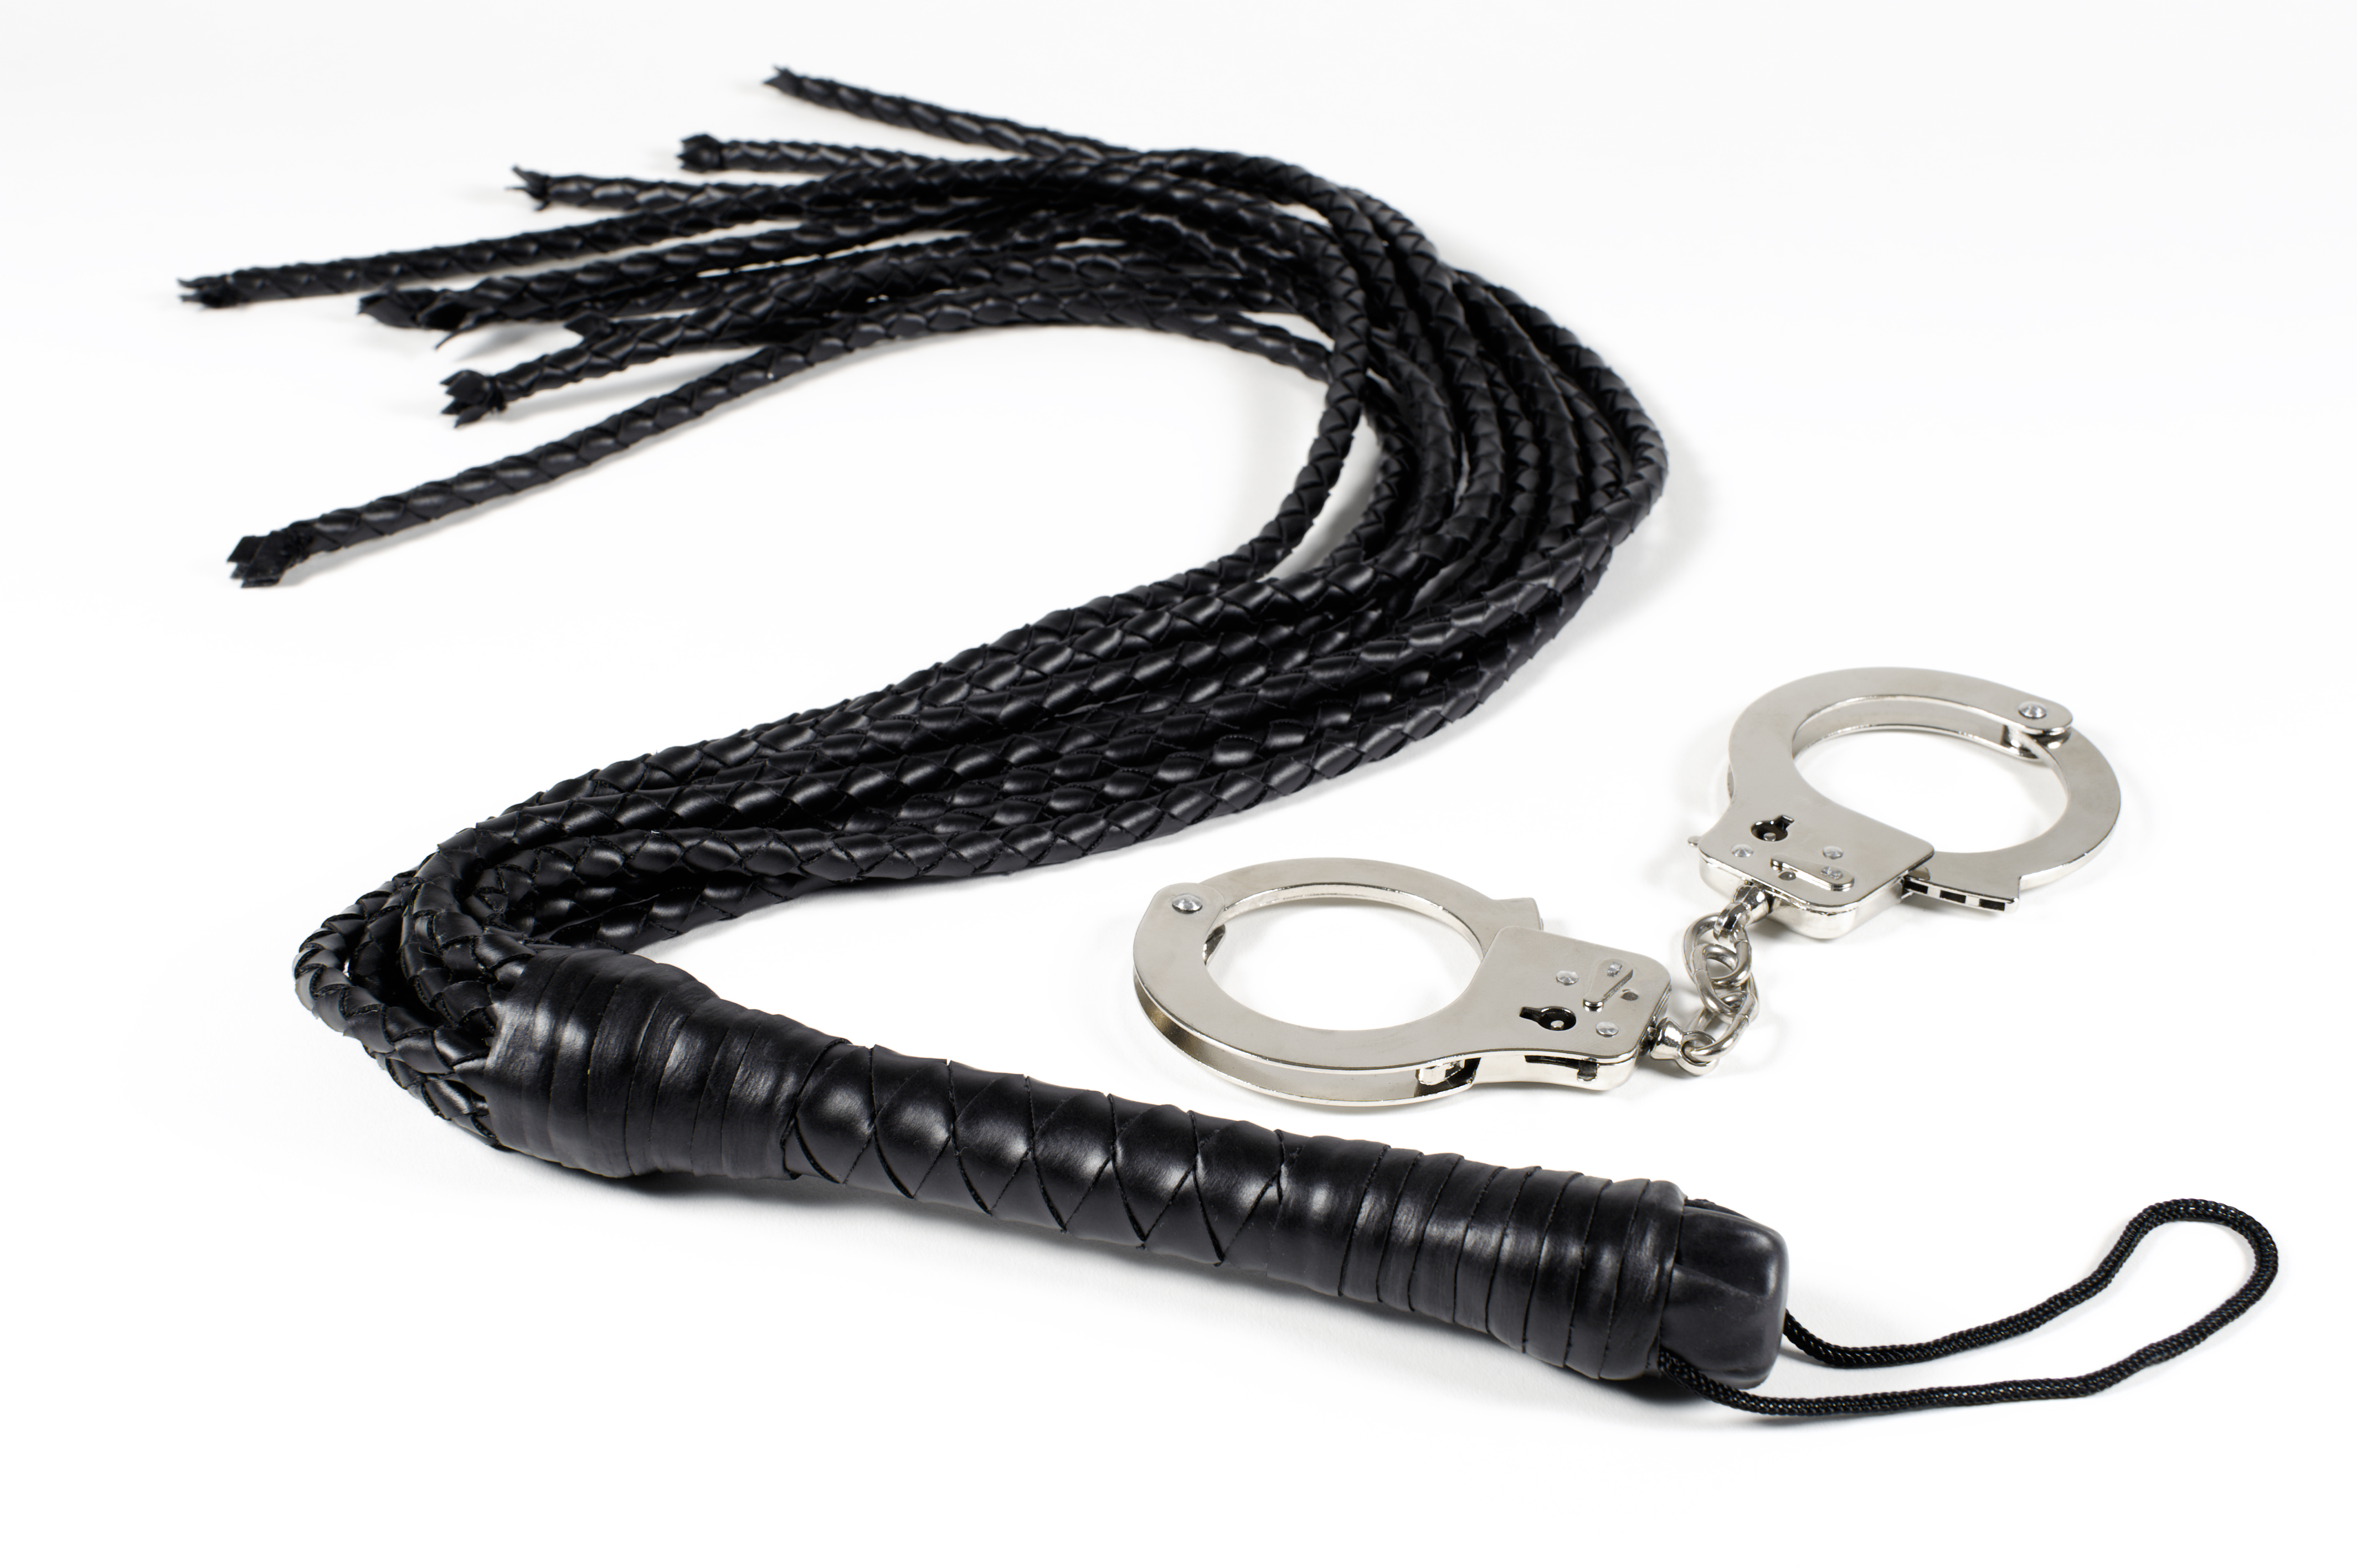 Whip tgp bondage welt rope